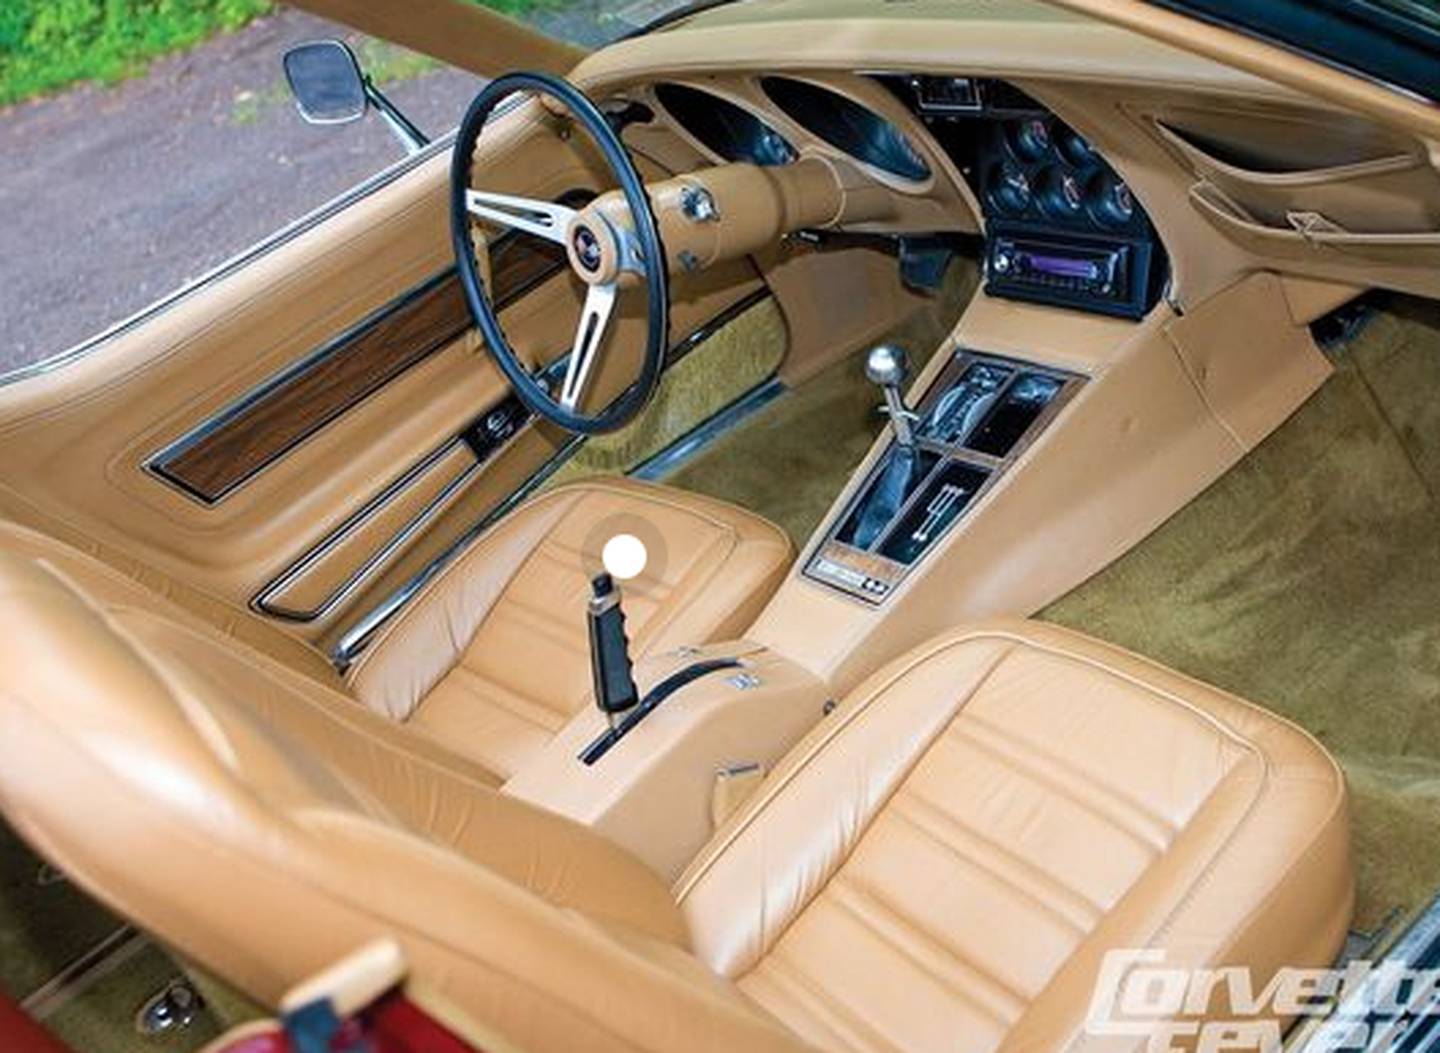 Un Chevrolet Corvette del año 80 es uno de los vehículos soñados de Marco Rodríguez. Foto ilustrativa.